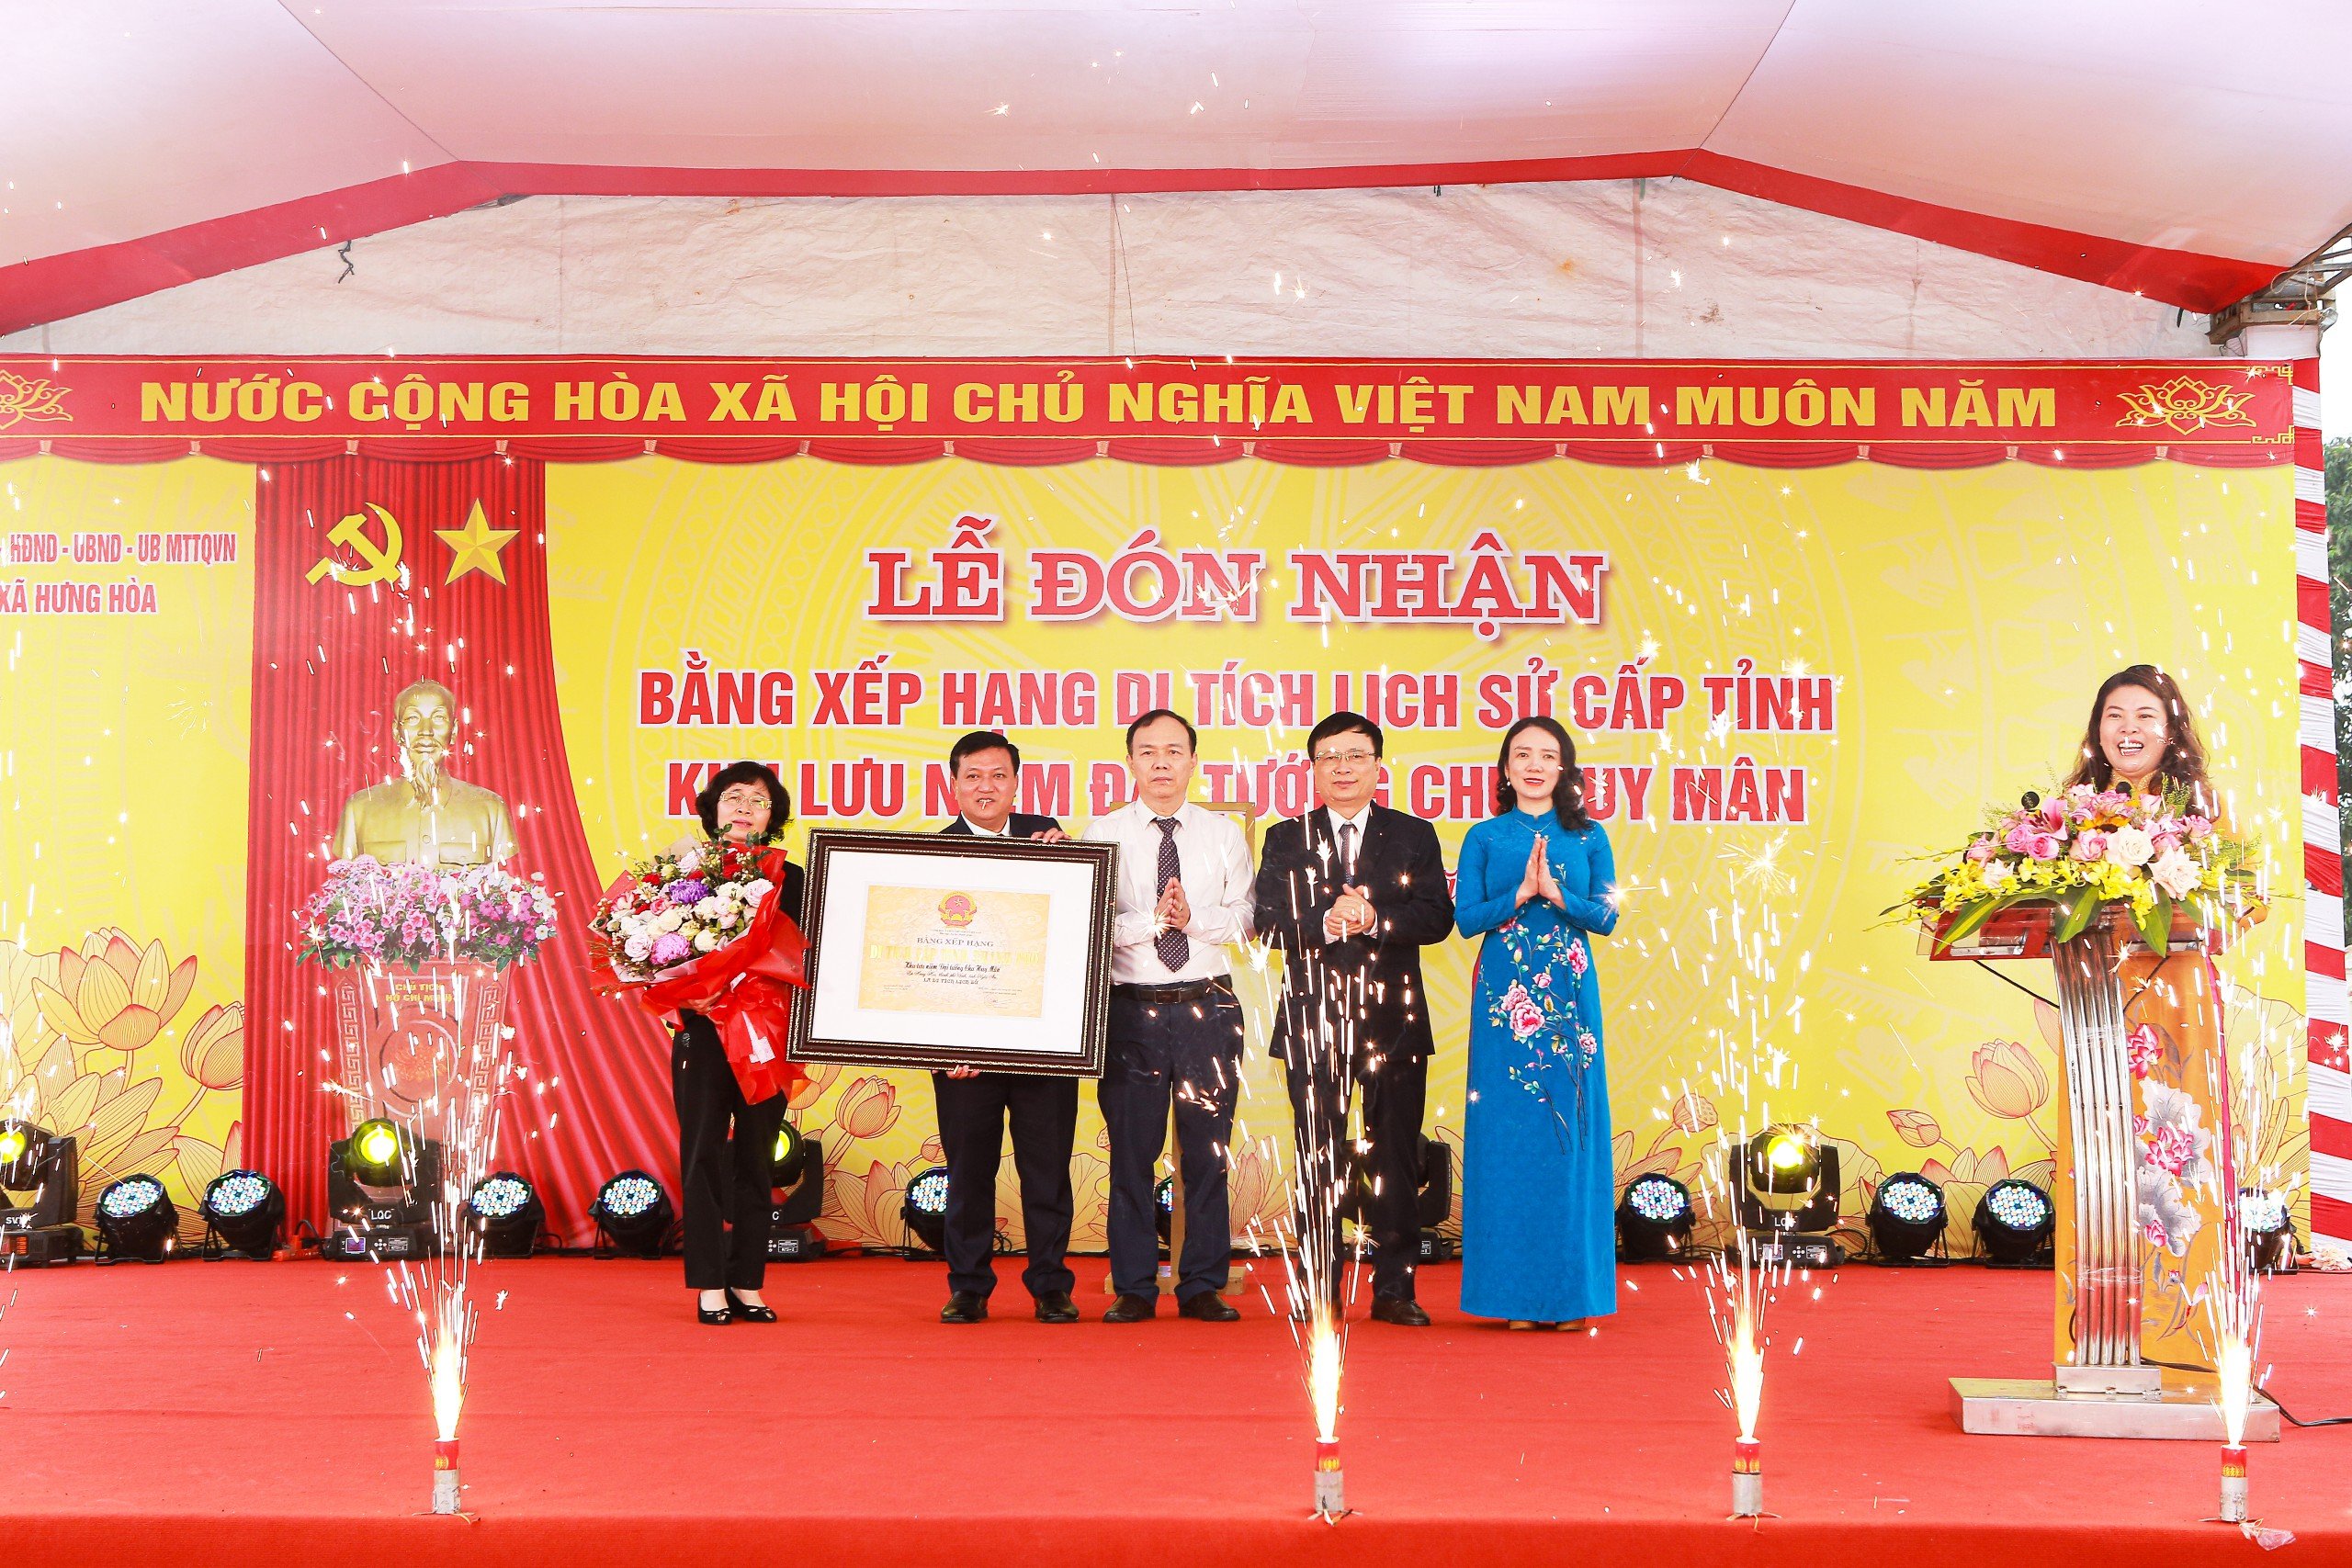 Thành phố Vinh đón nhận Bằng di tích lịch sử cấp tỉnh Khu lưu niệm Đại tướng Chu Huy Mân